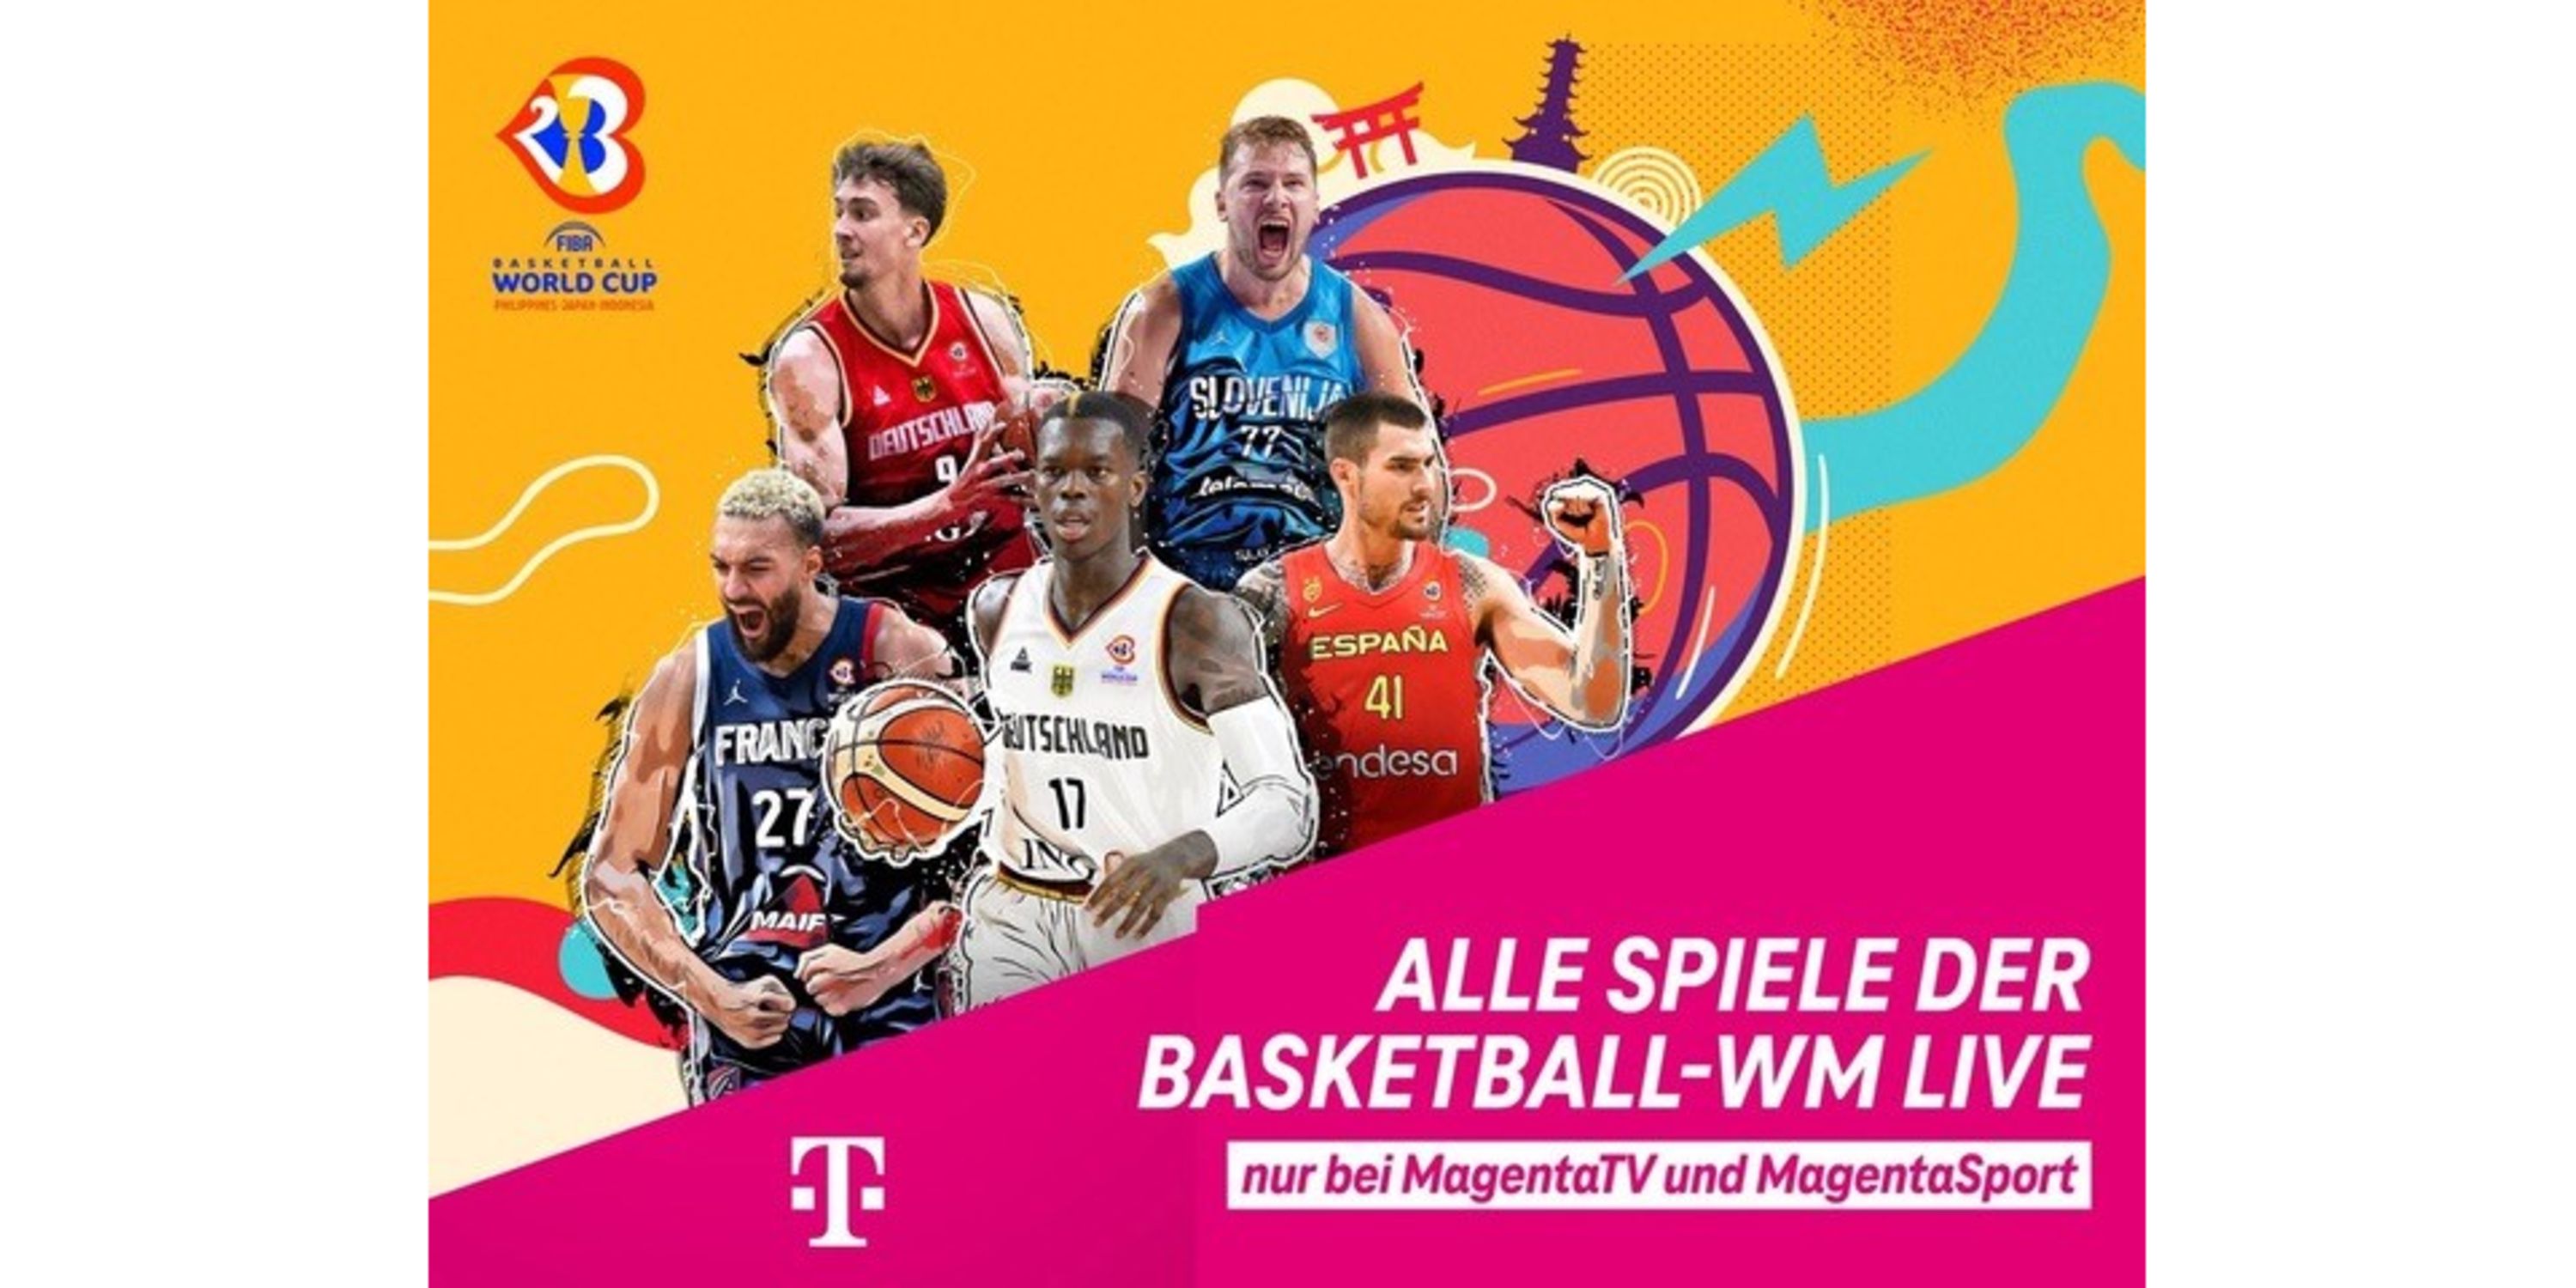 Basketball WM komplett live bei MagentaSport Deutsche Telekom